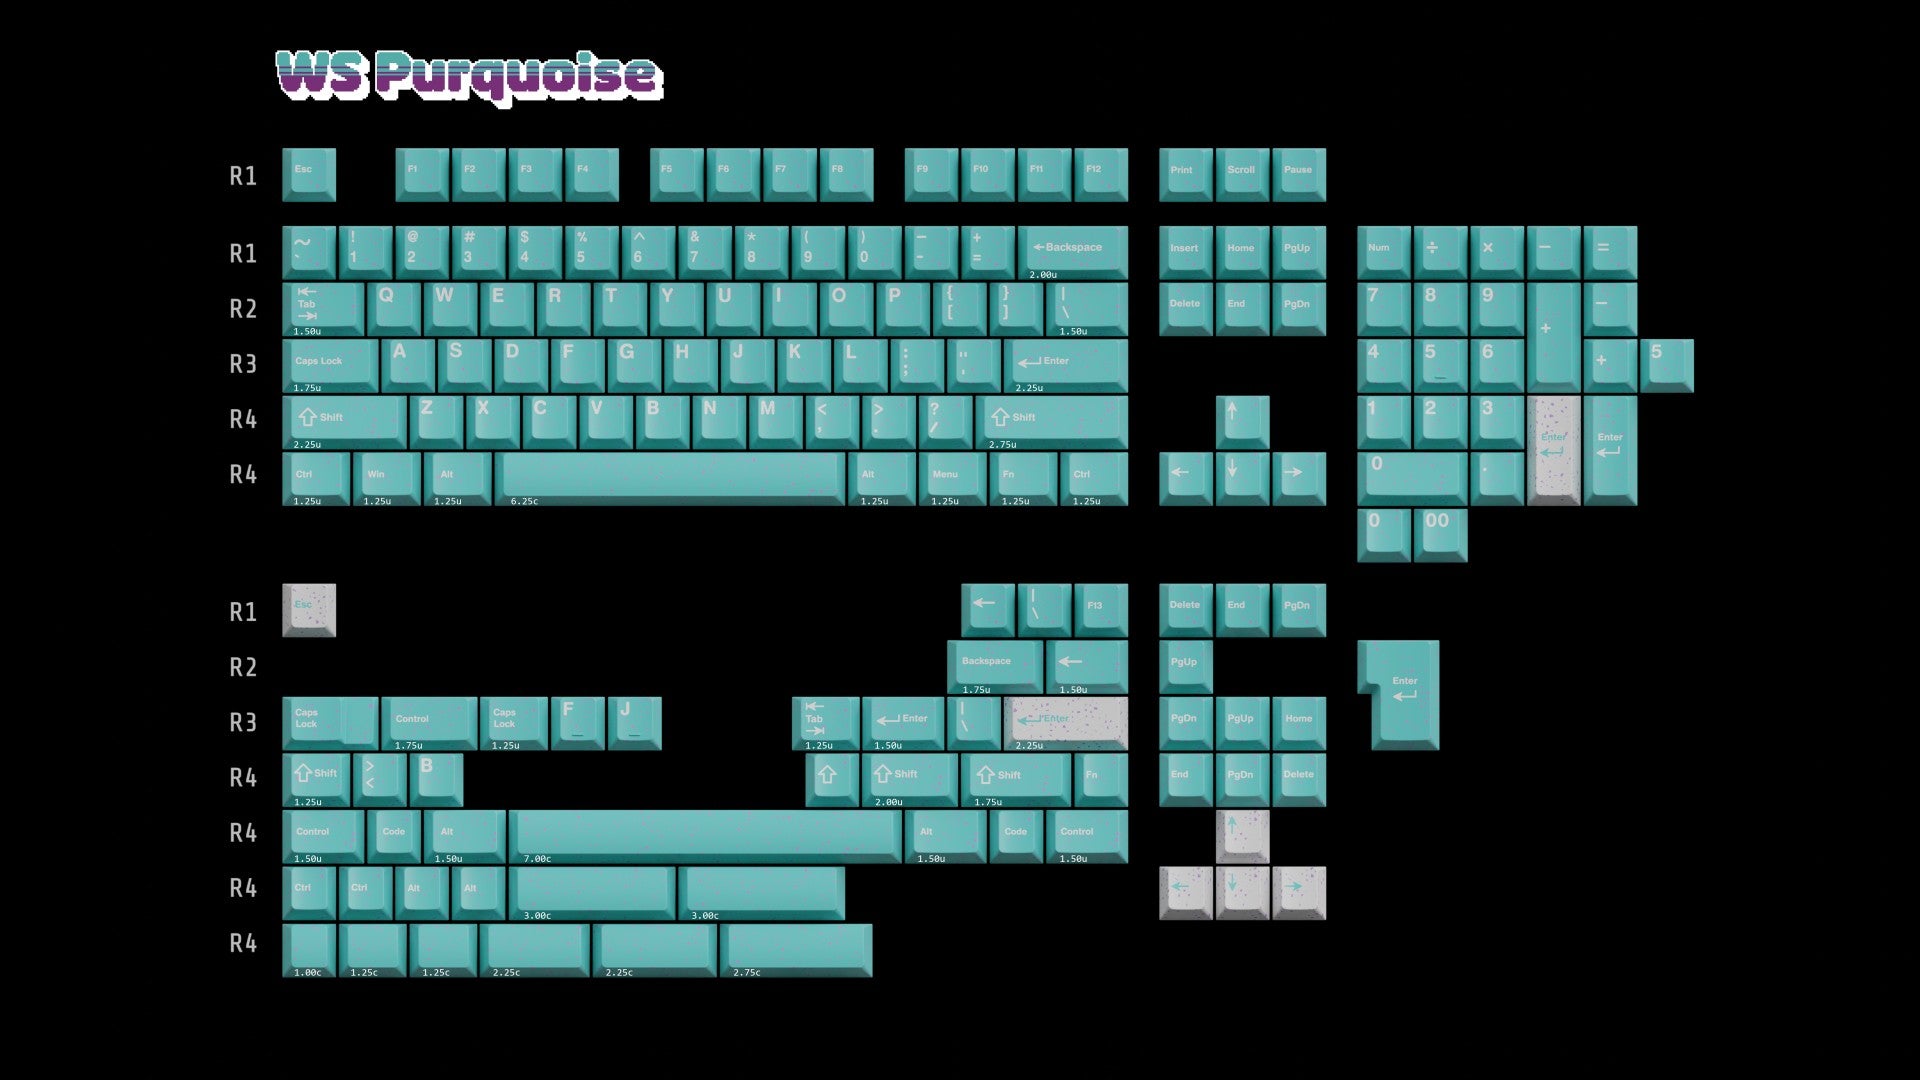 Extra] WS Purquoise Keycaps Set – Wuque Studio